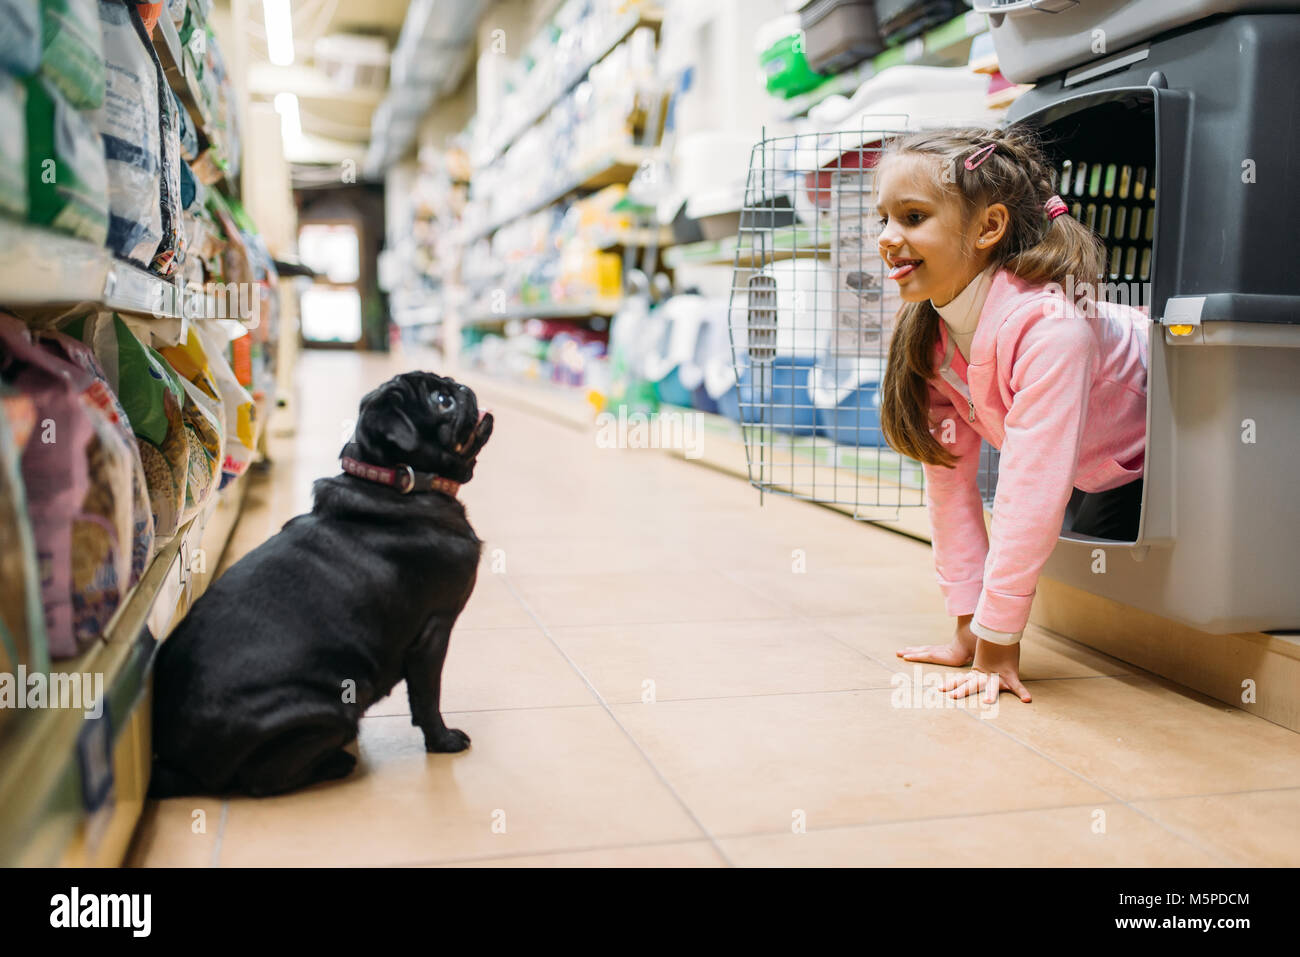 Kleines Mädchen spielt mit den Welpen in Pet Shop, Freundschaft. Kind mit Hund wählt Träger in petshop, Pflege für Haustiere Stockfoto